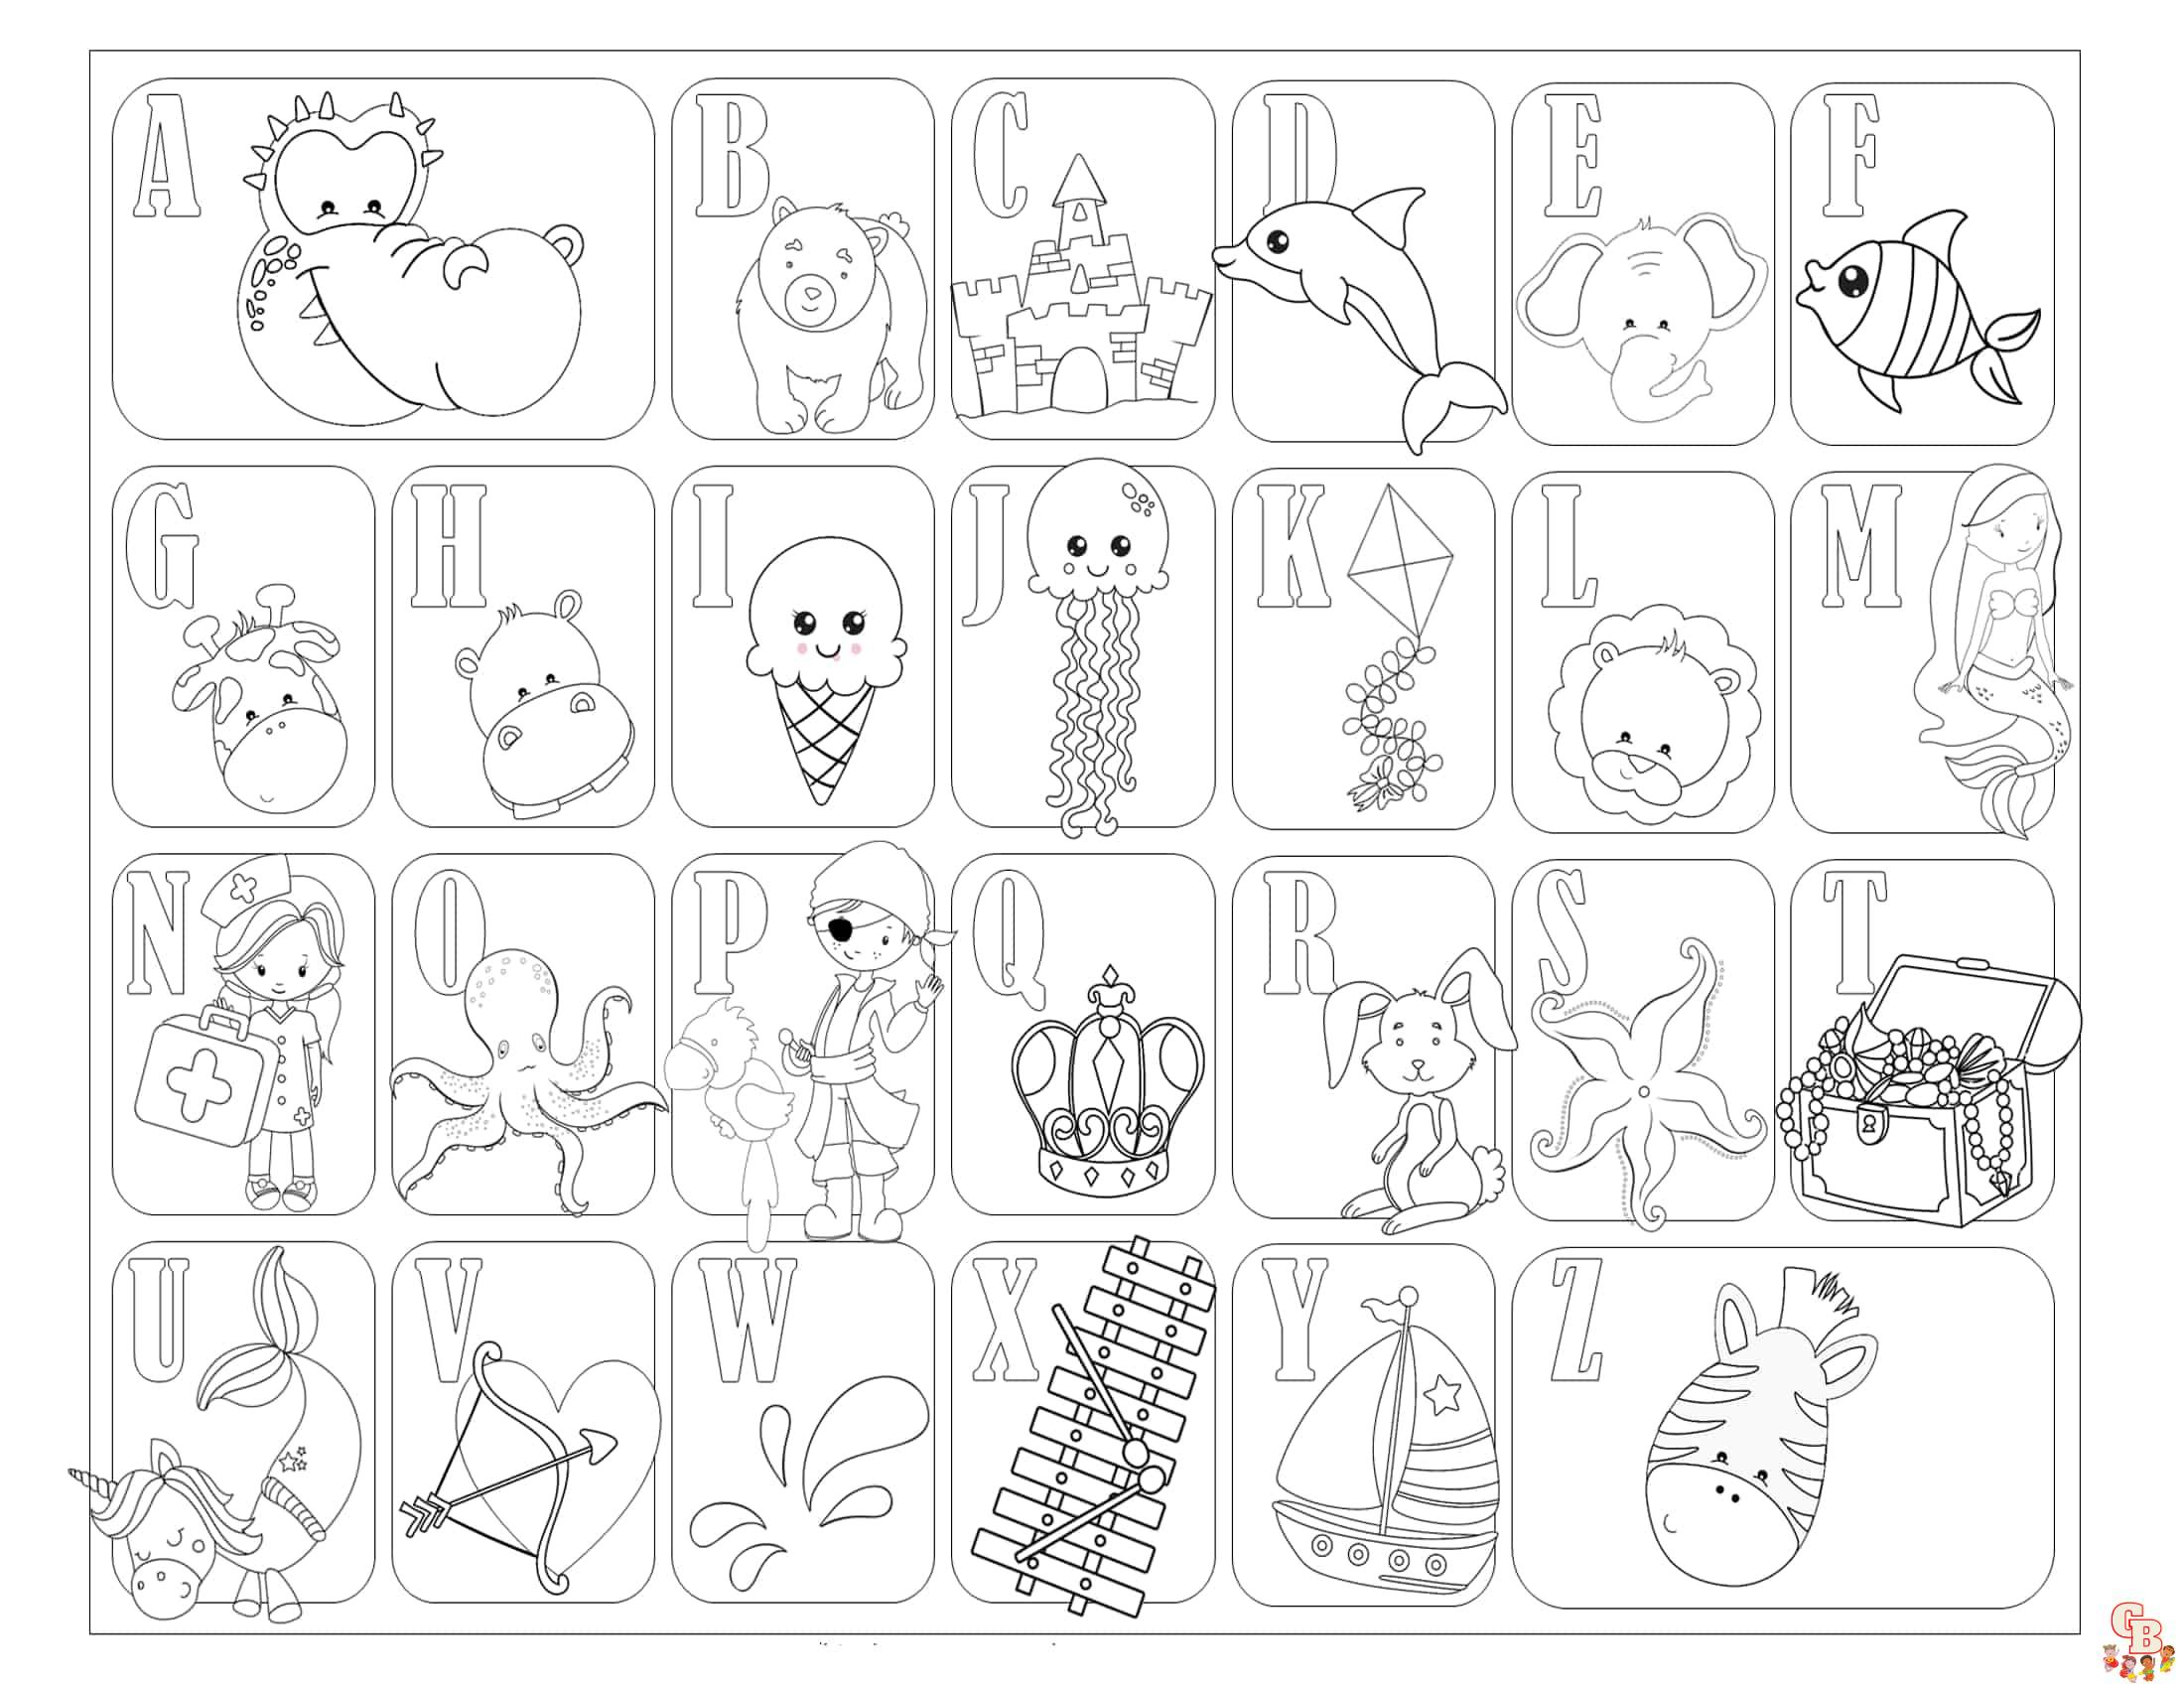 Dibujos del abecedario para colorear para niños de 3 años.